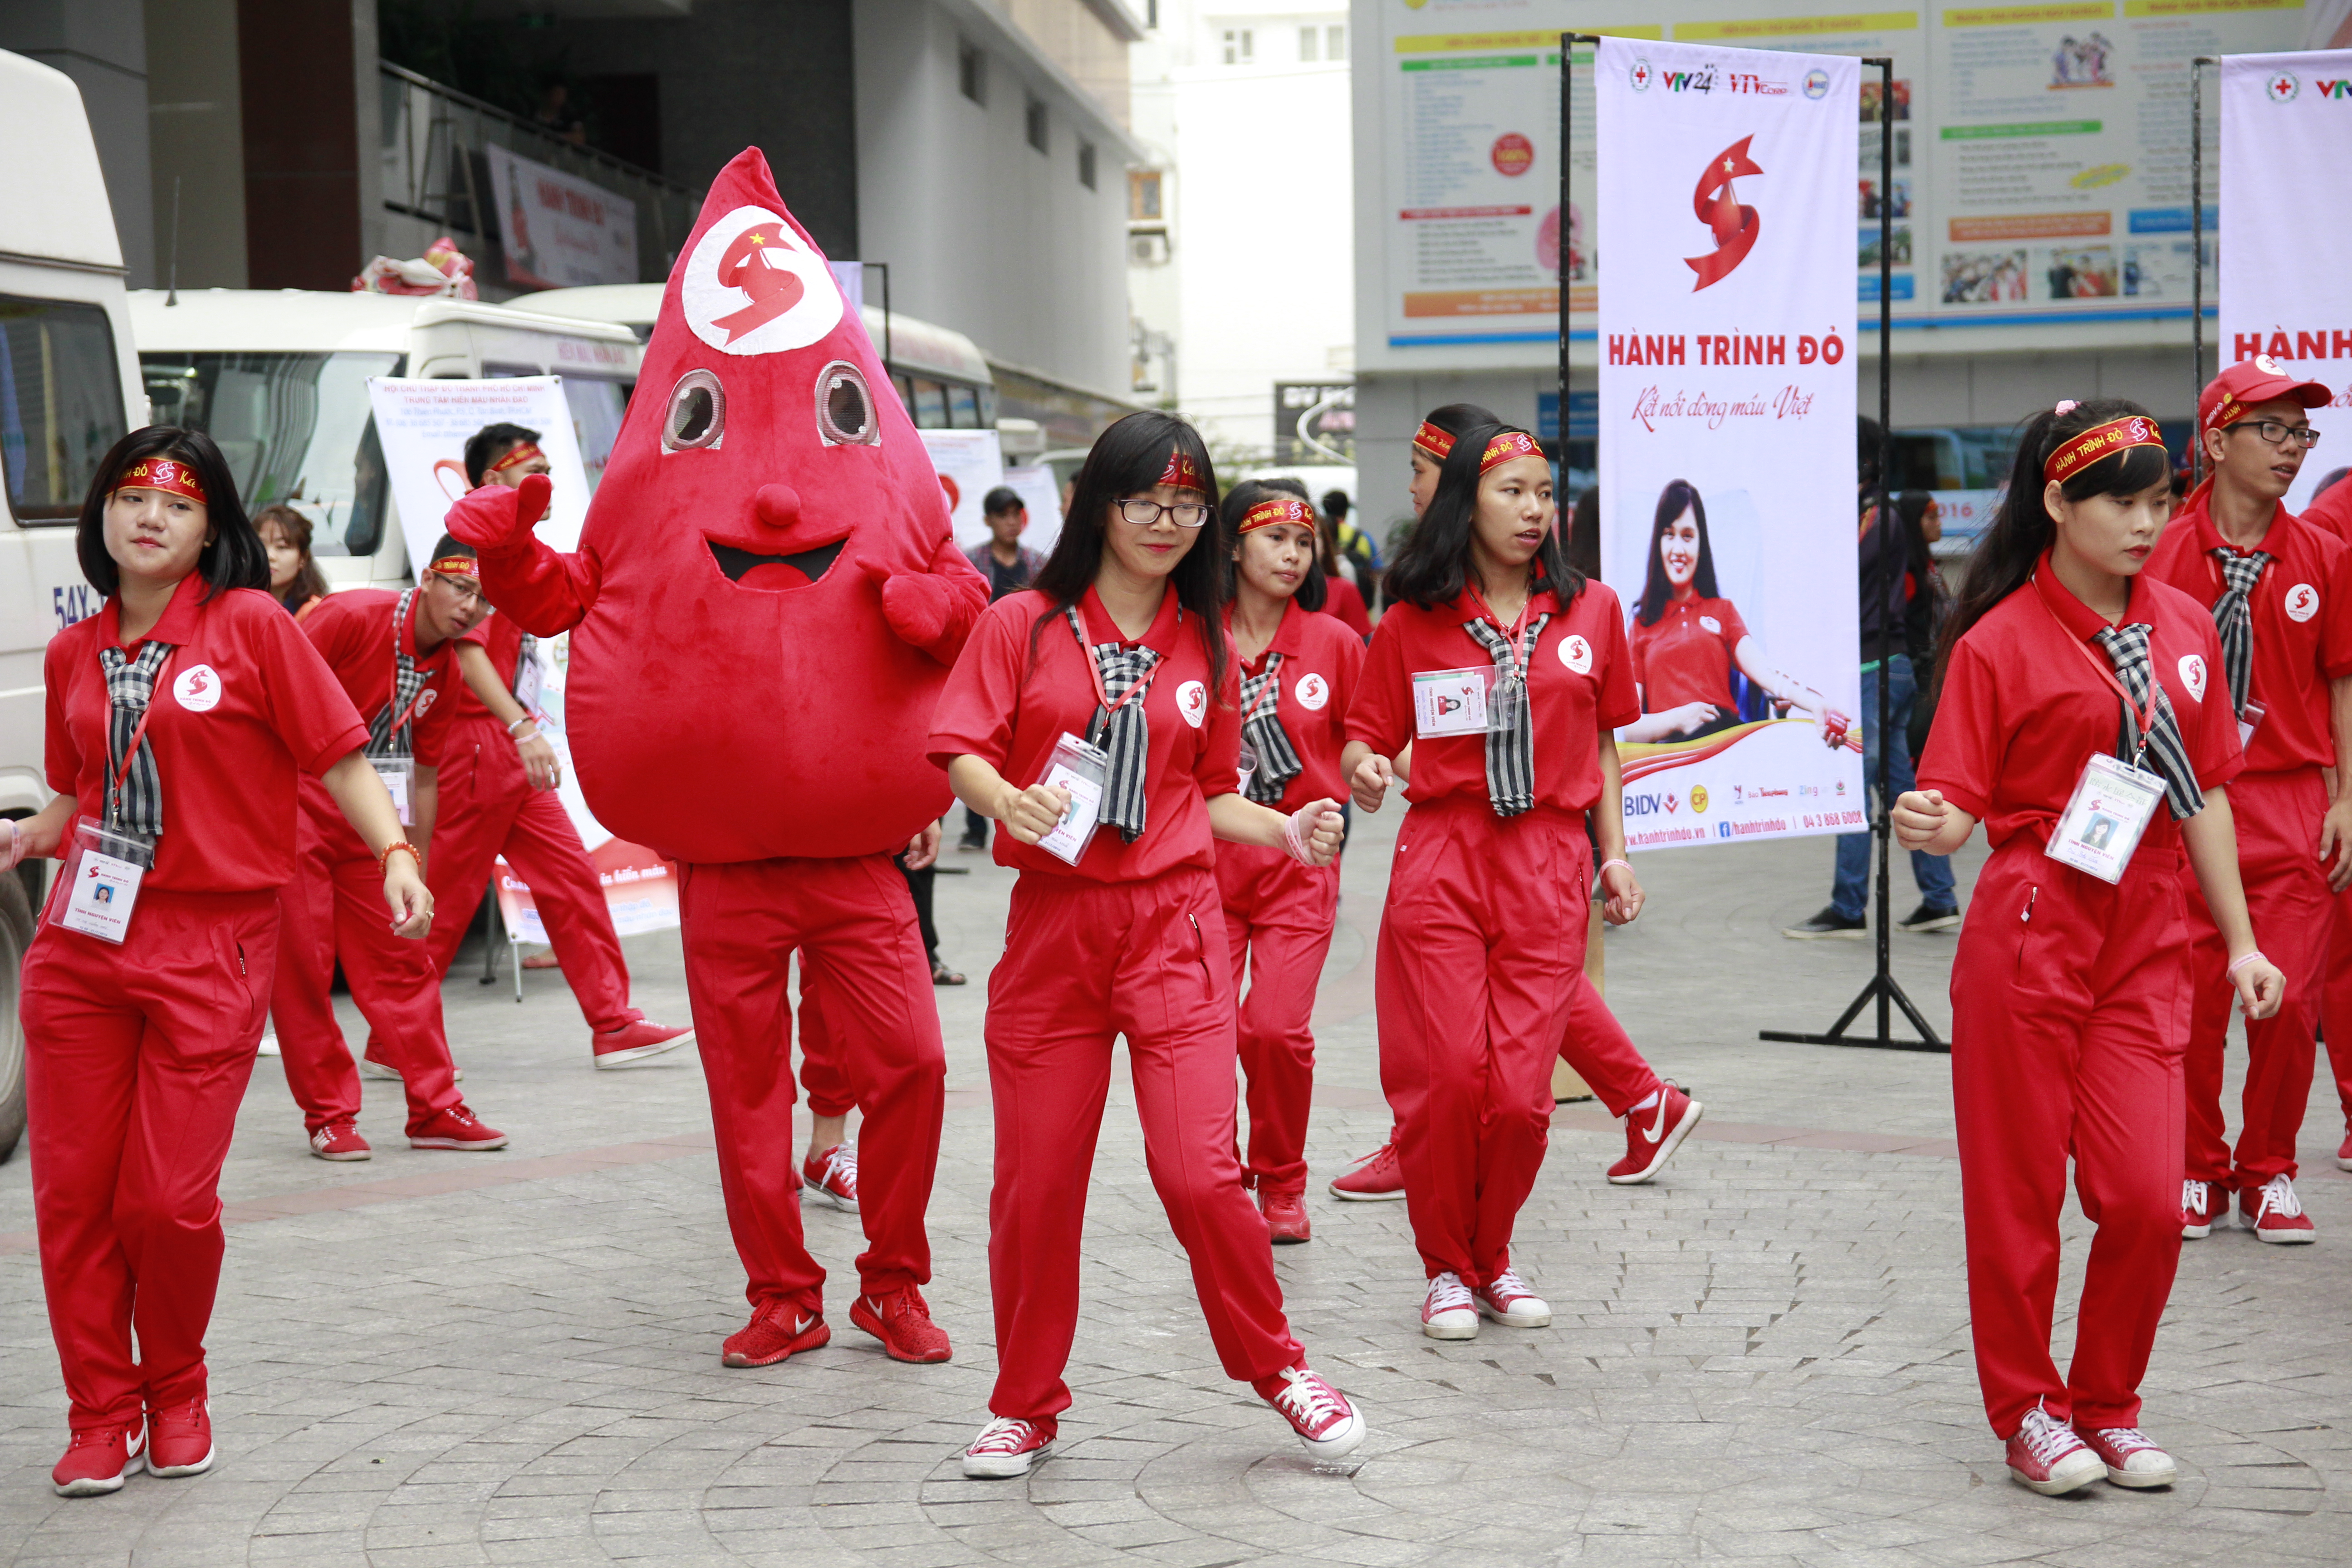 Gần 1.000 đơn vị máu được hiến trong Ngày hội “Hành trình đỏ” tại HUTECH 21